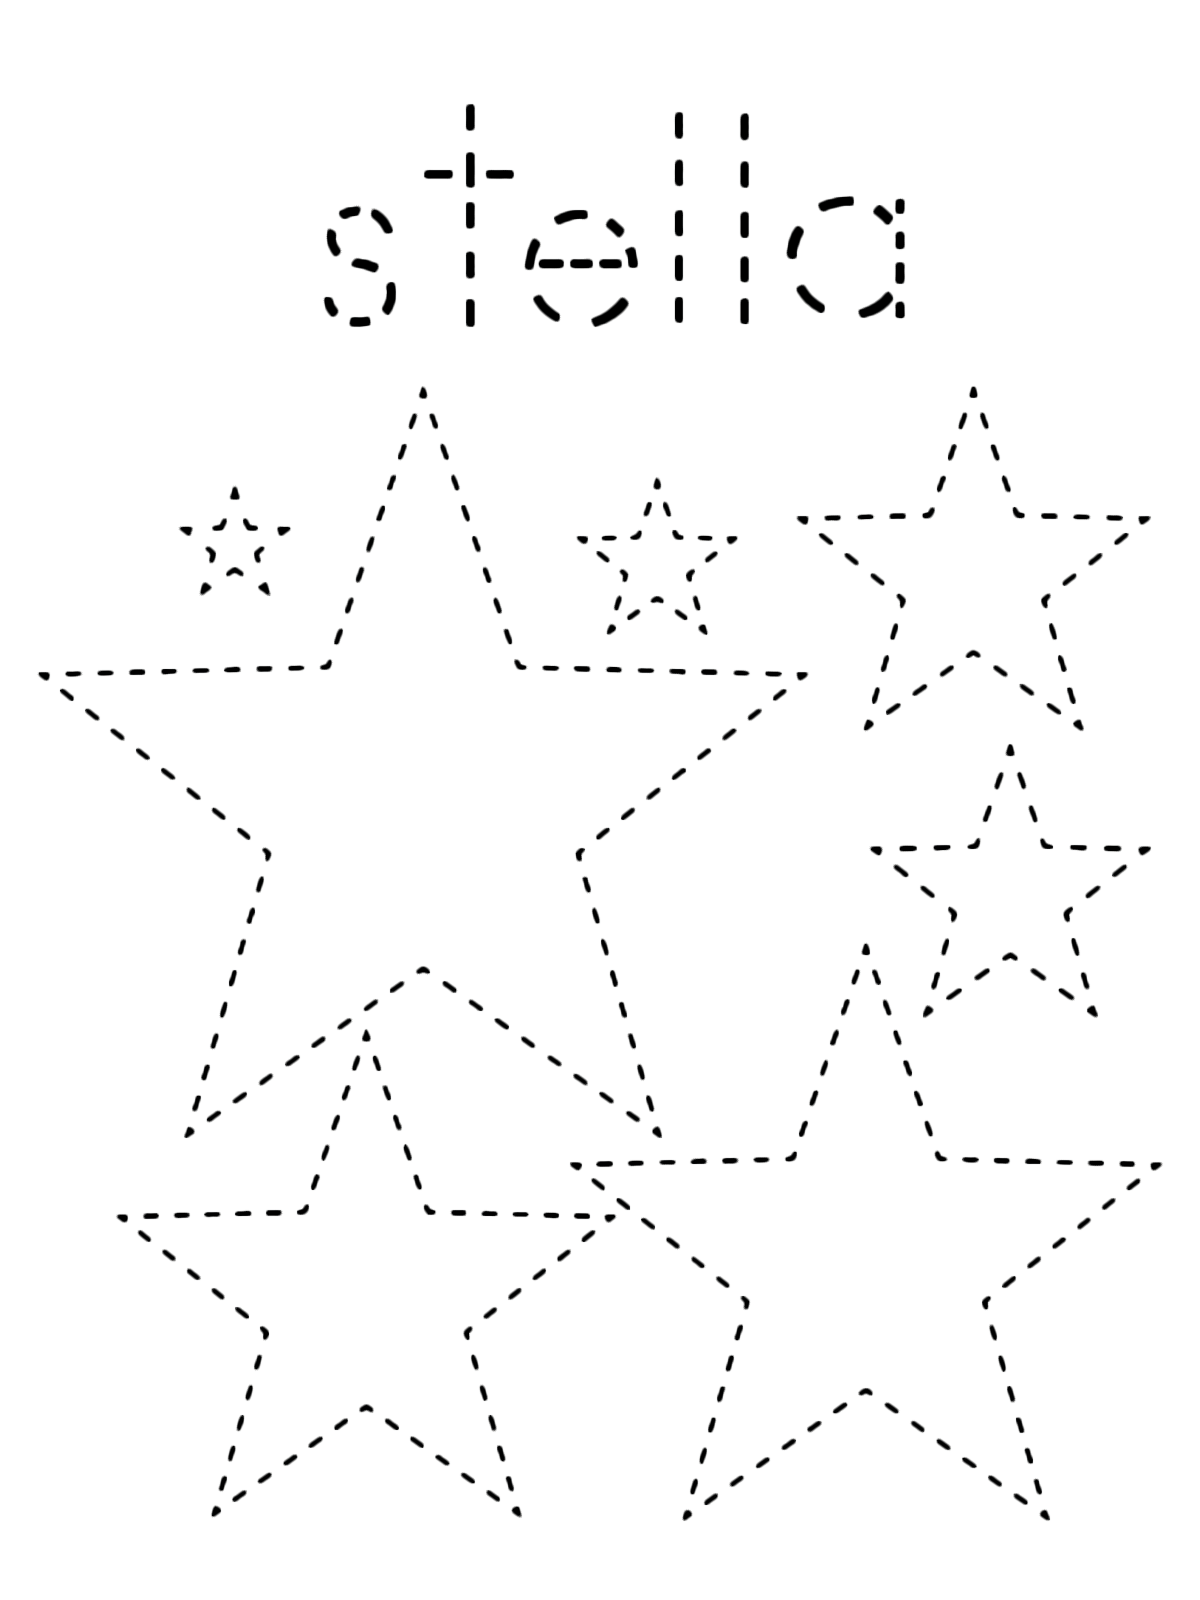 Figure geometriche - Stella tratteggiata